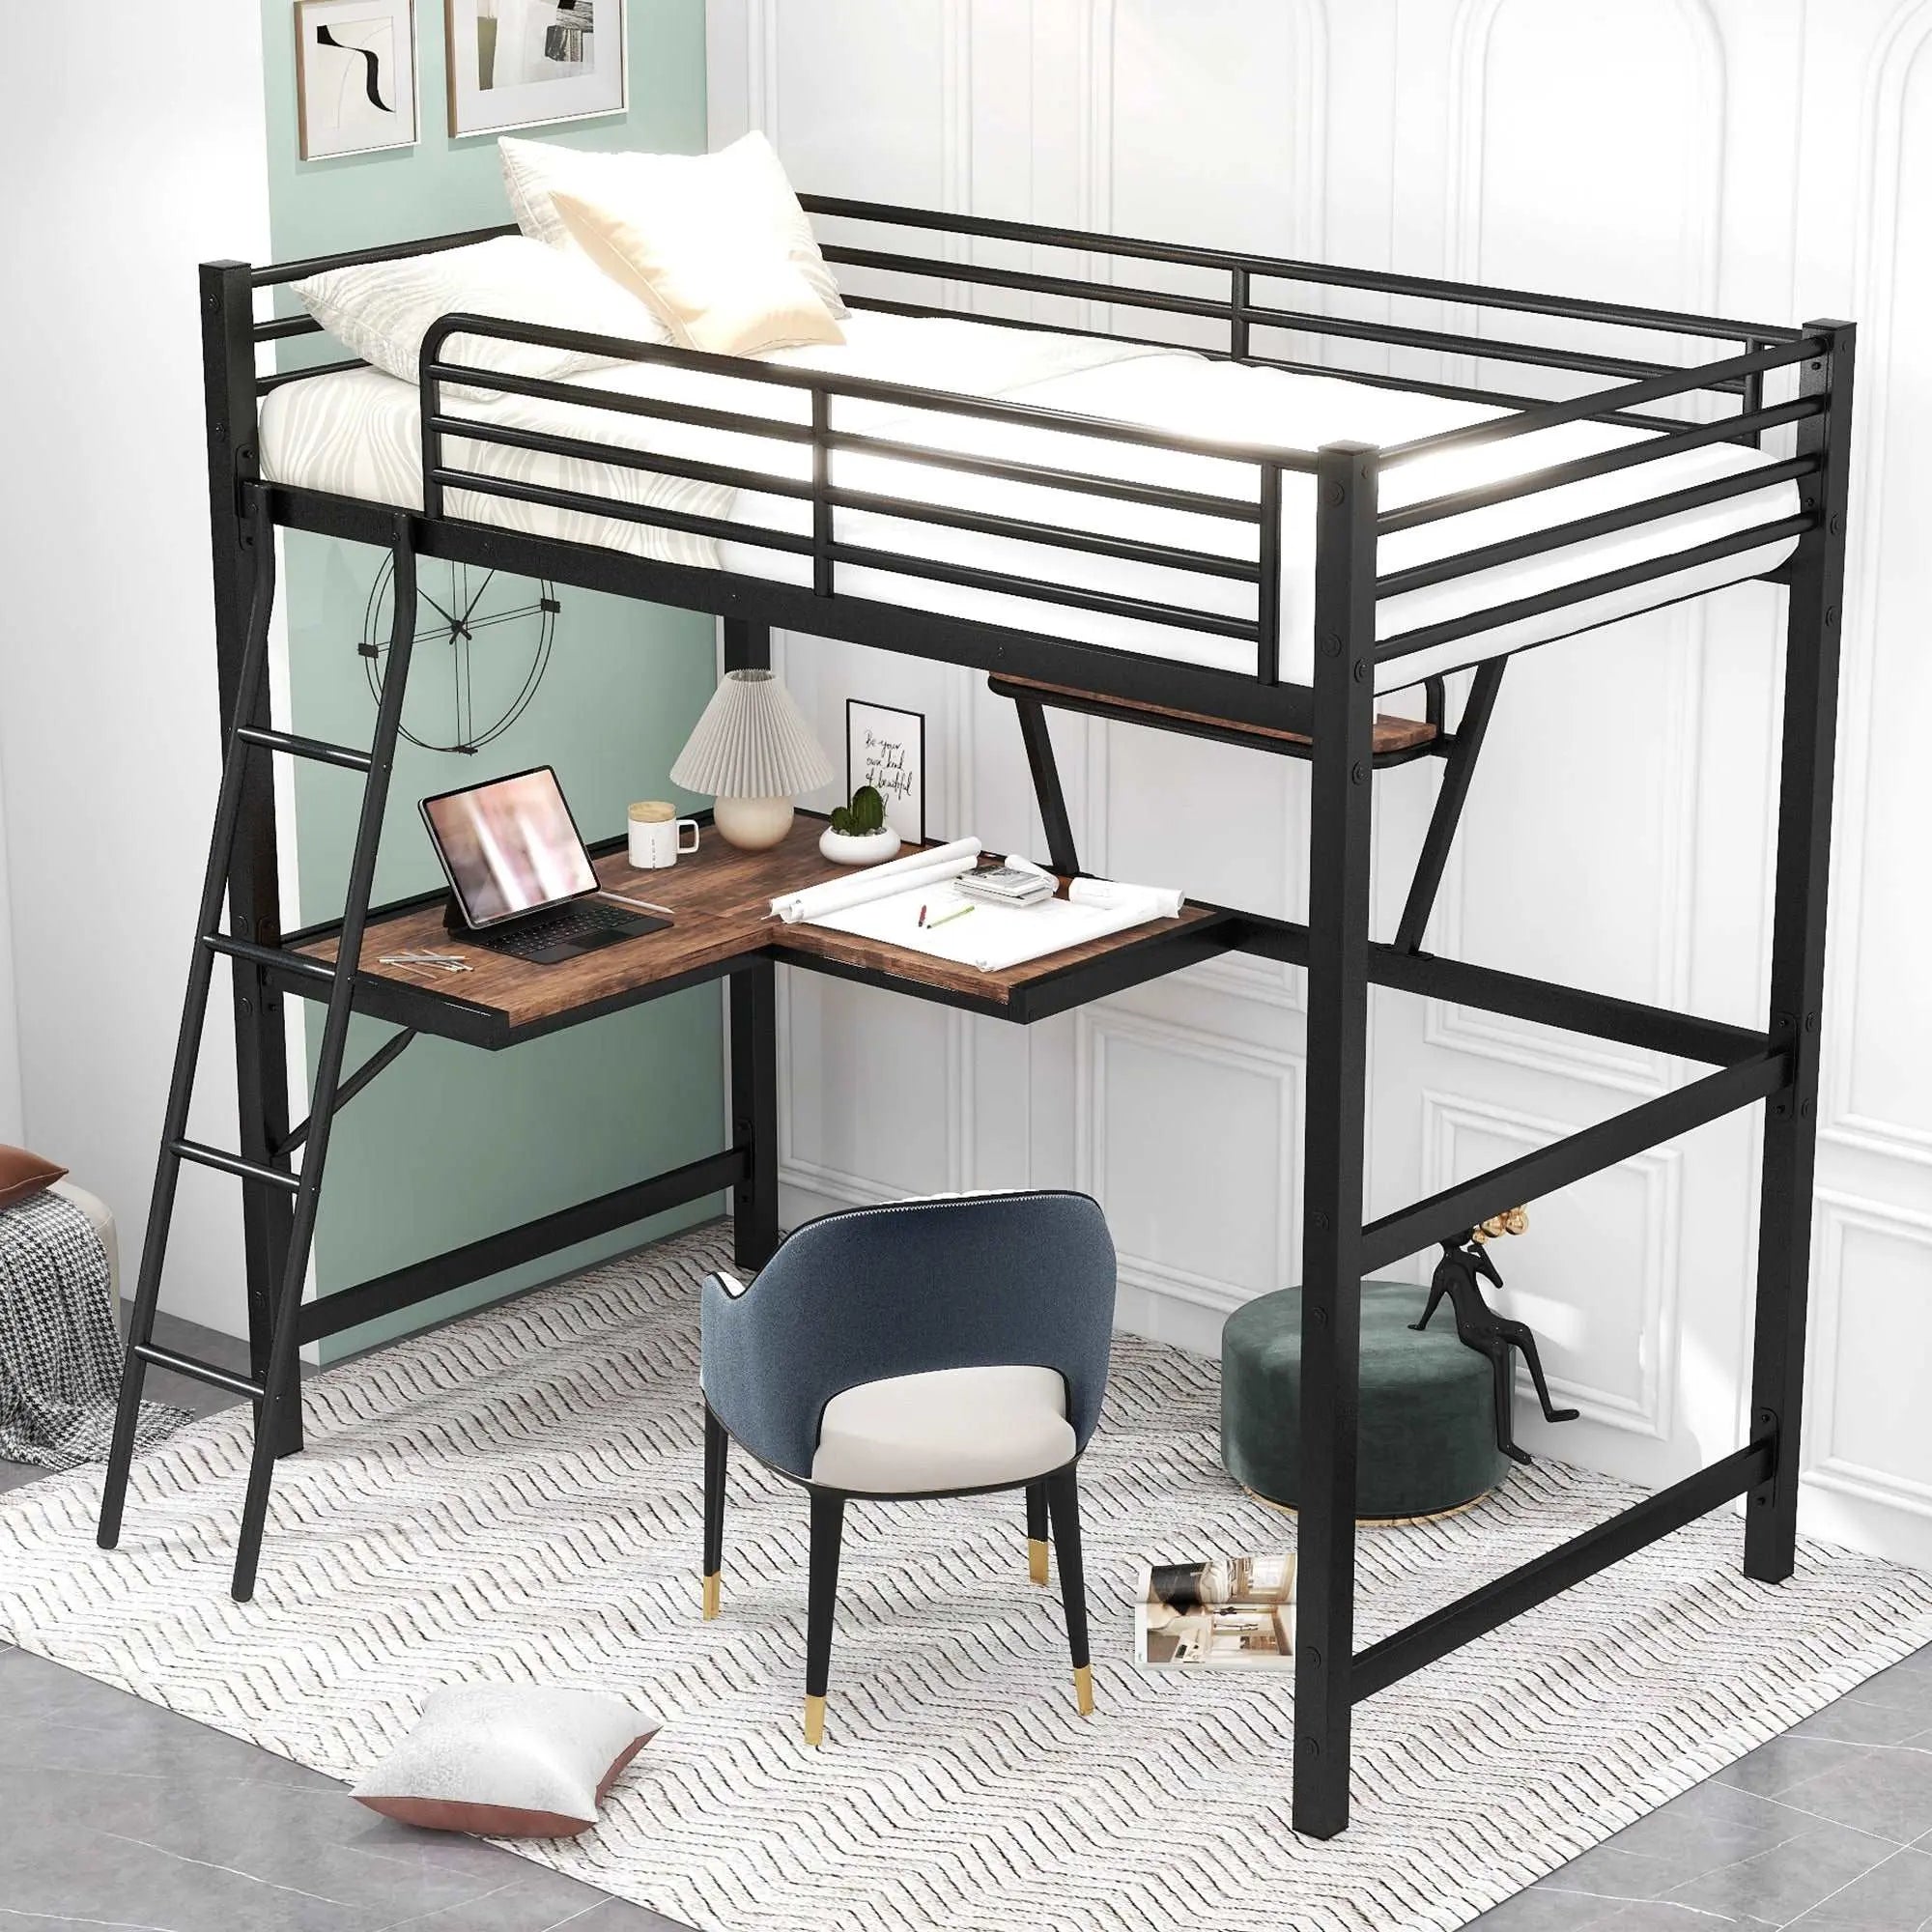 Bellemave High Loft Metal&MDF Bed with Desk and Shelf